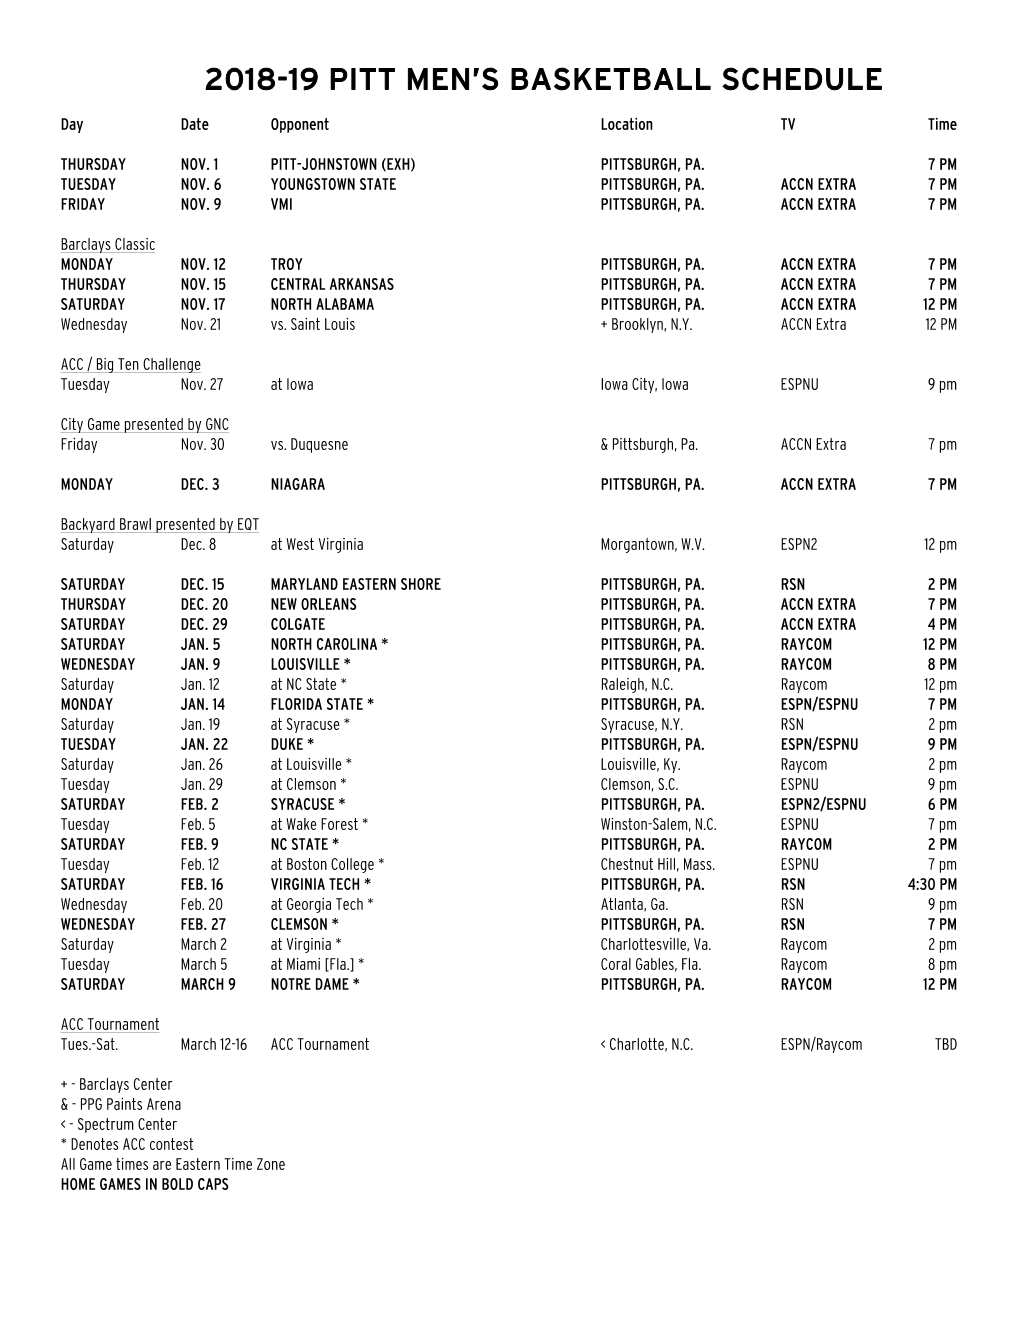 2018-19 Pitt Men's Basketball Schedule